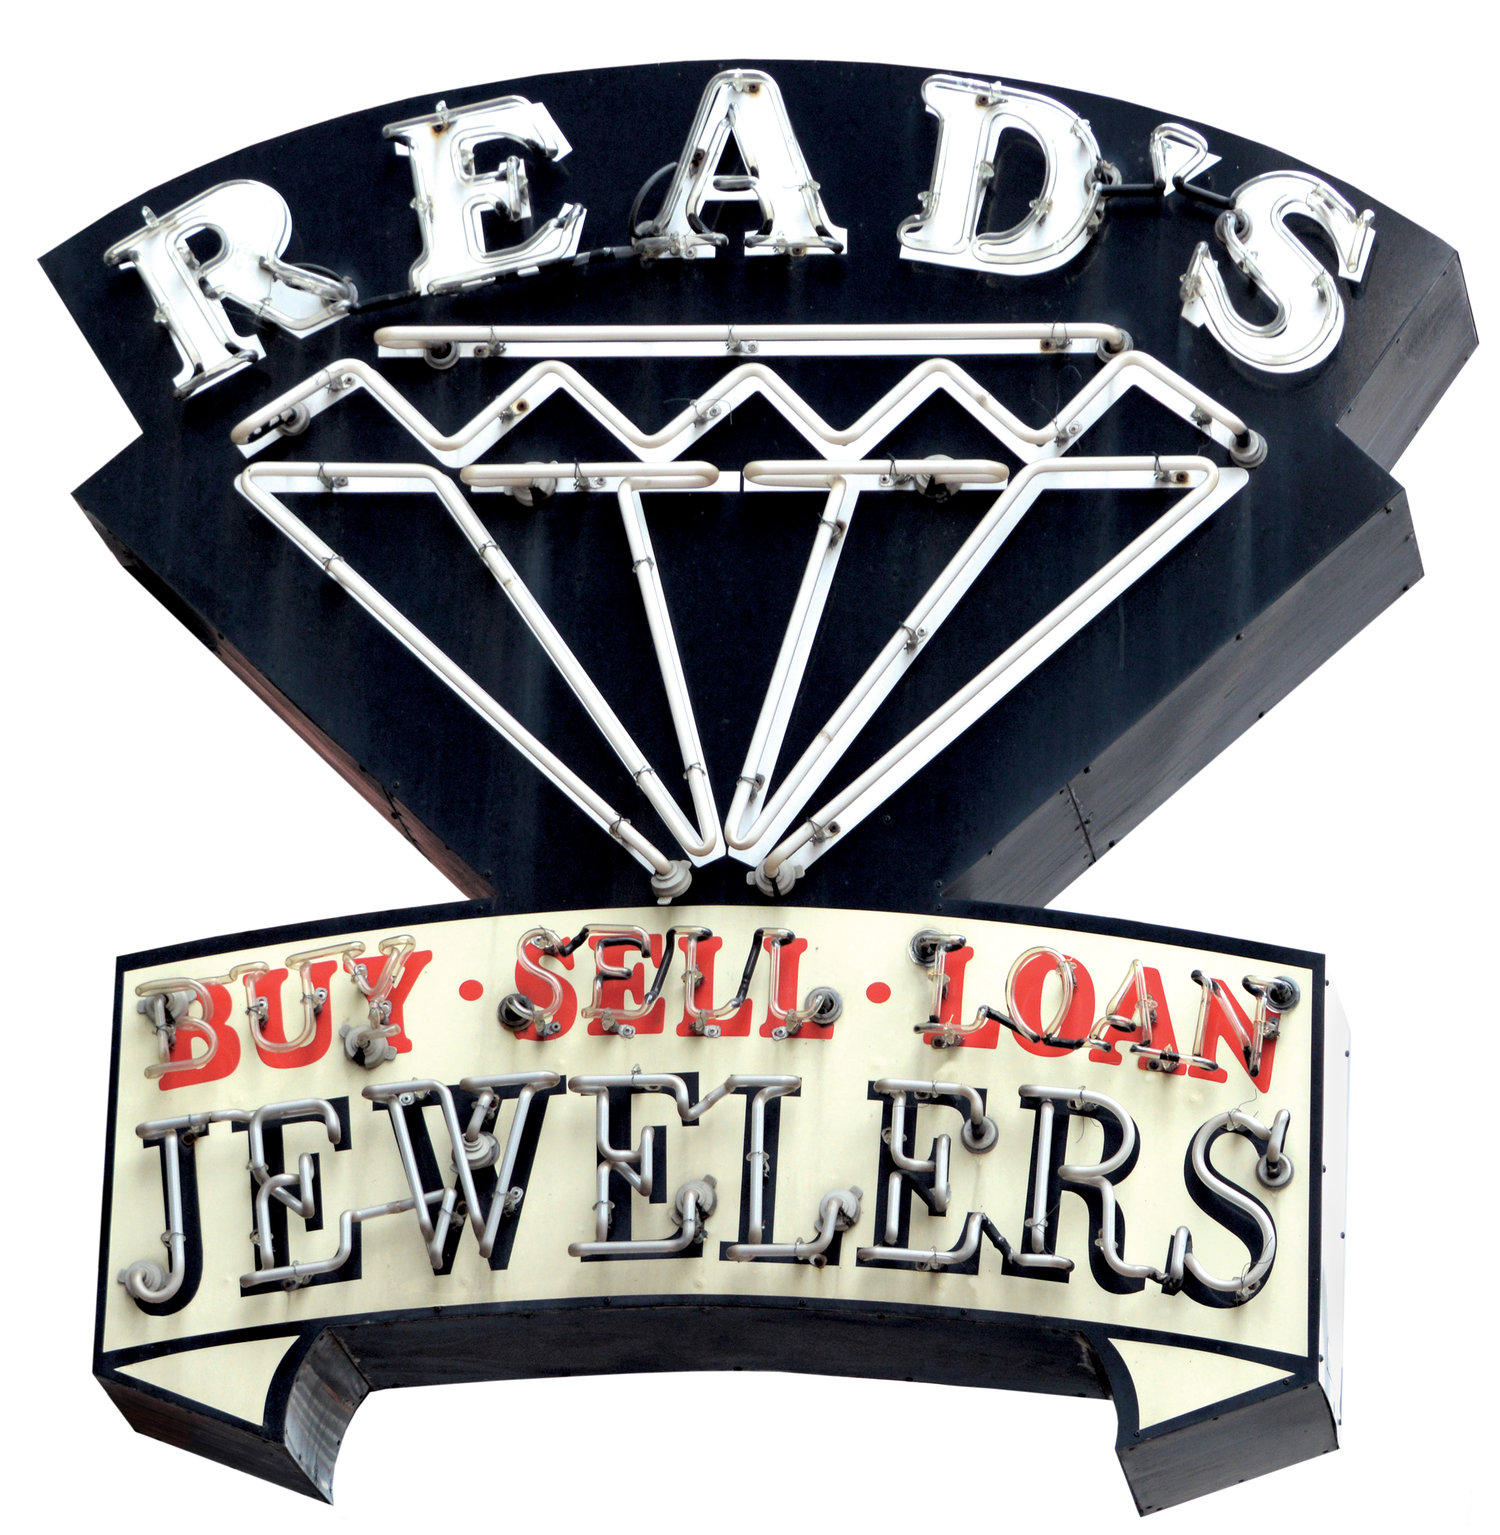 Read's Jewelry & Loan